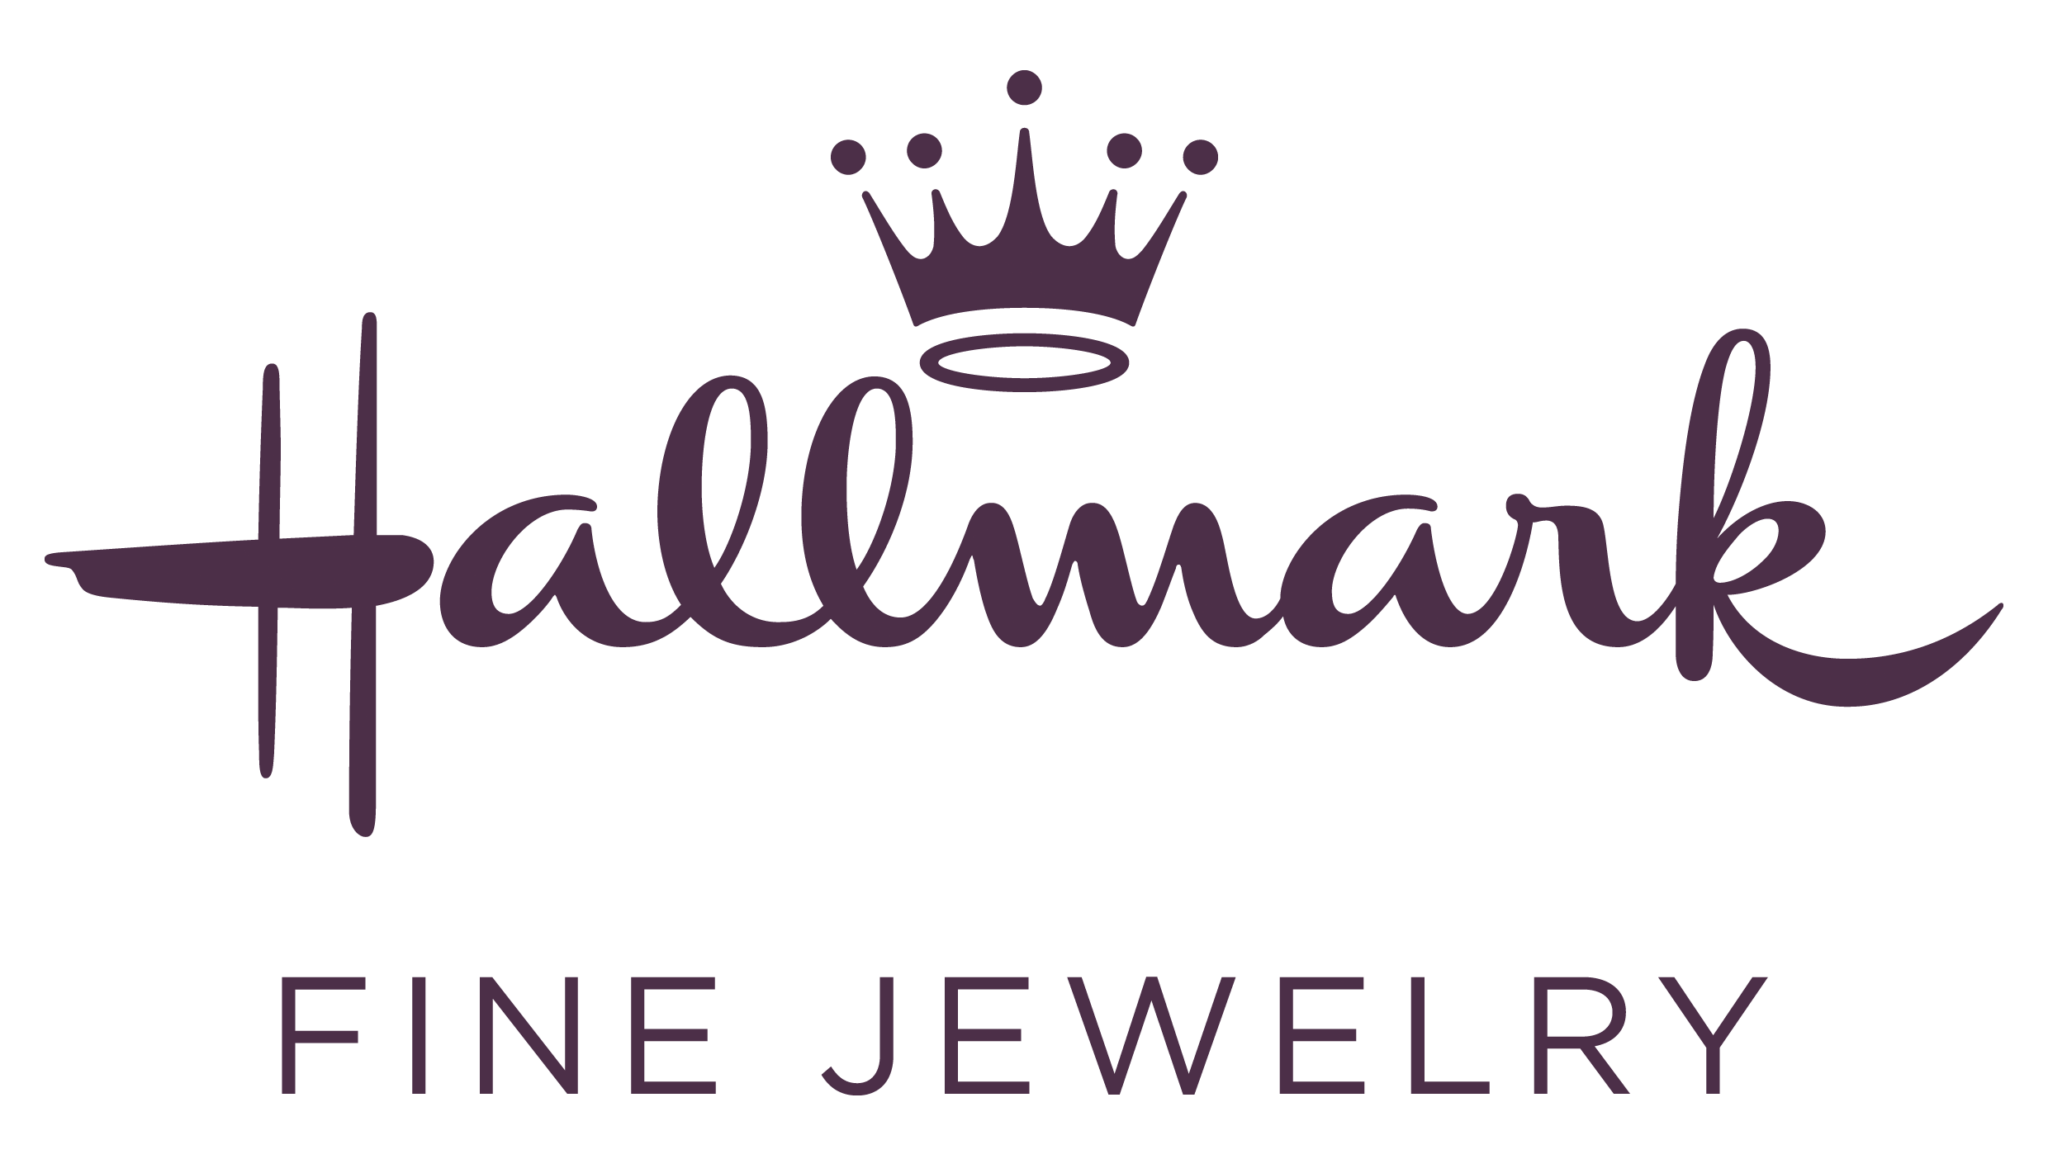 hallmark fine jewelry